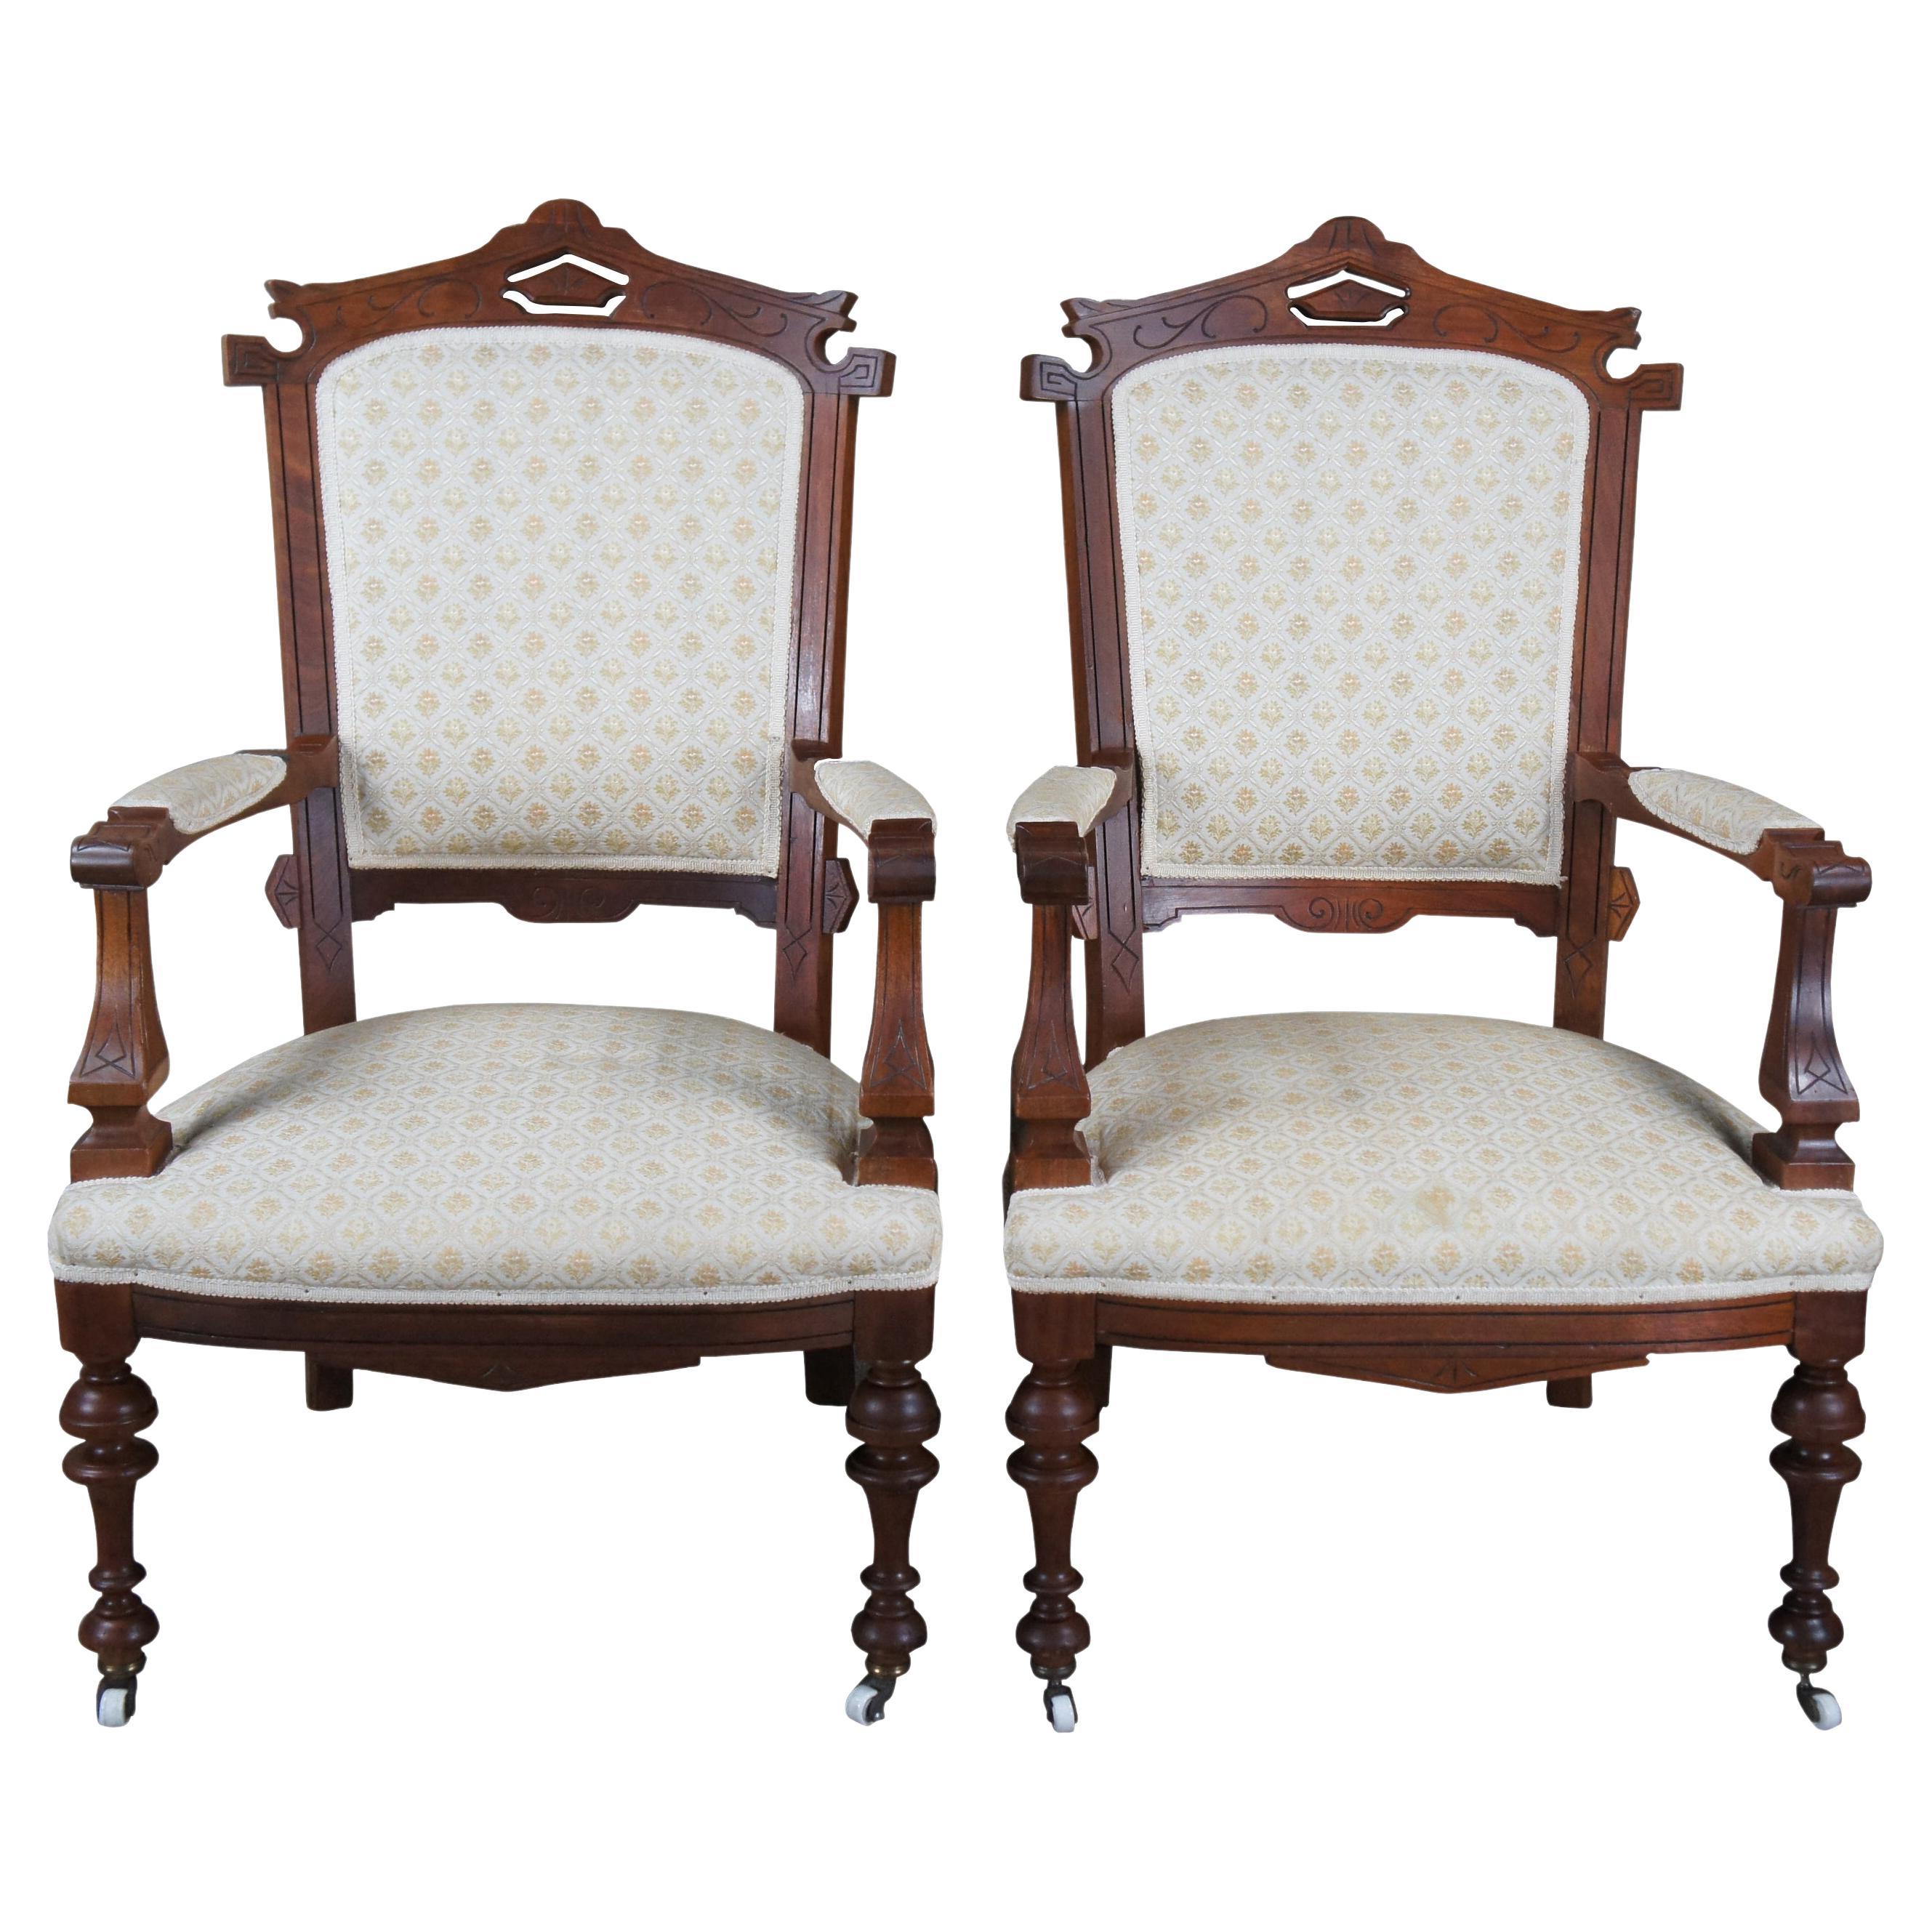 Antique Renaissance Revival Walnut Gentlemans Library Parlor Fauteuil Arm Chairs